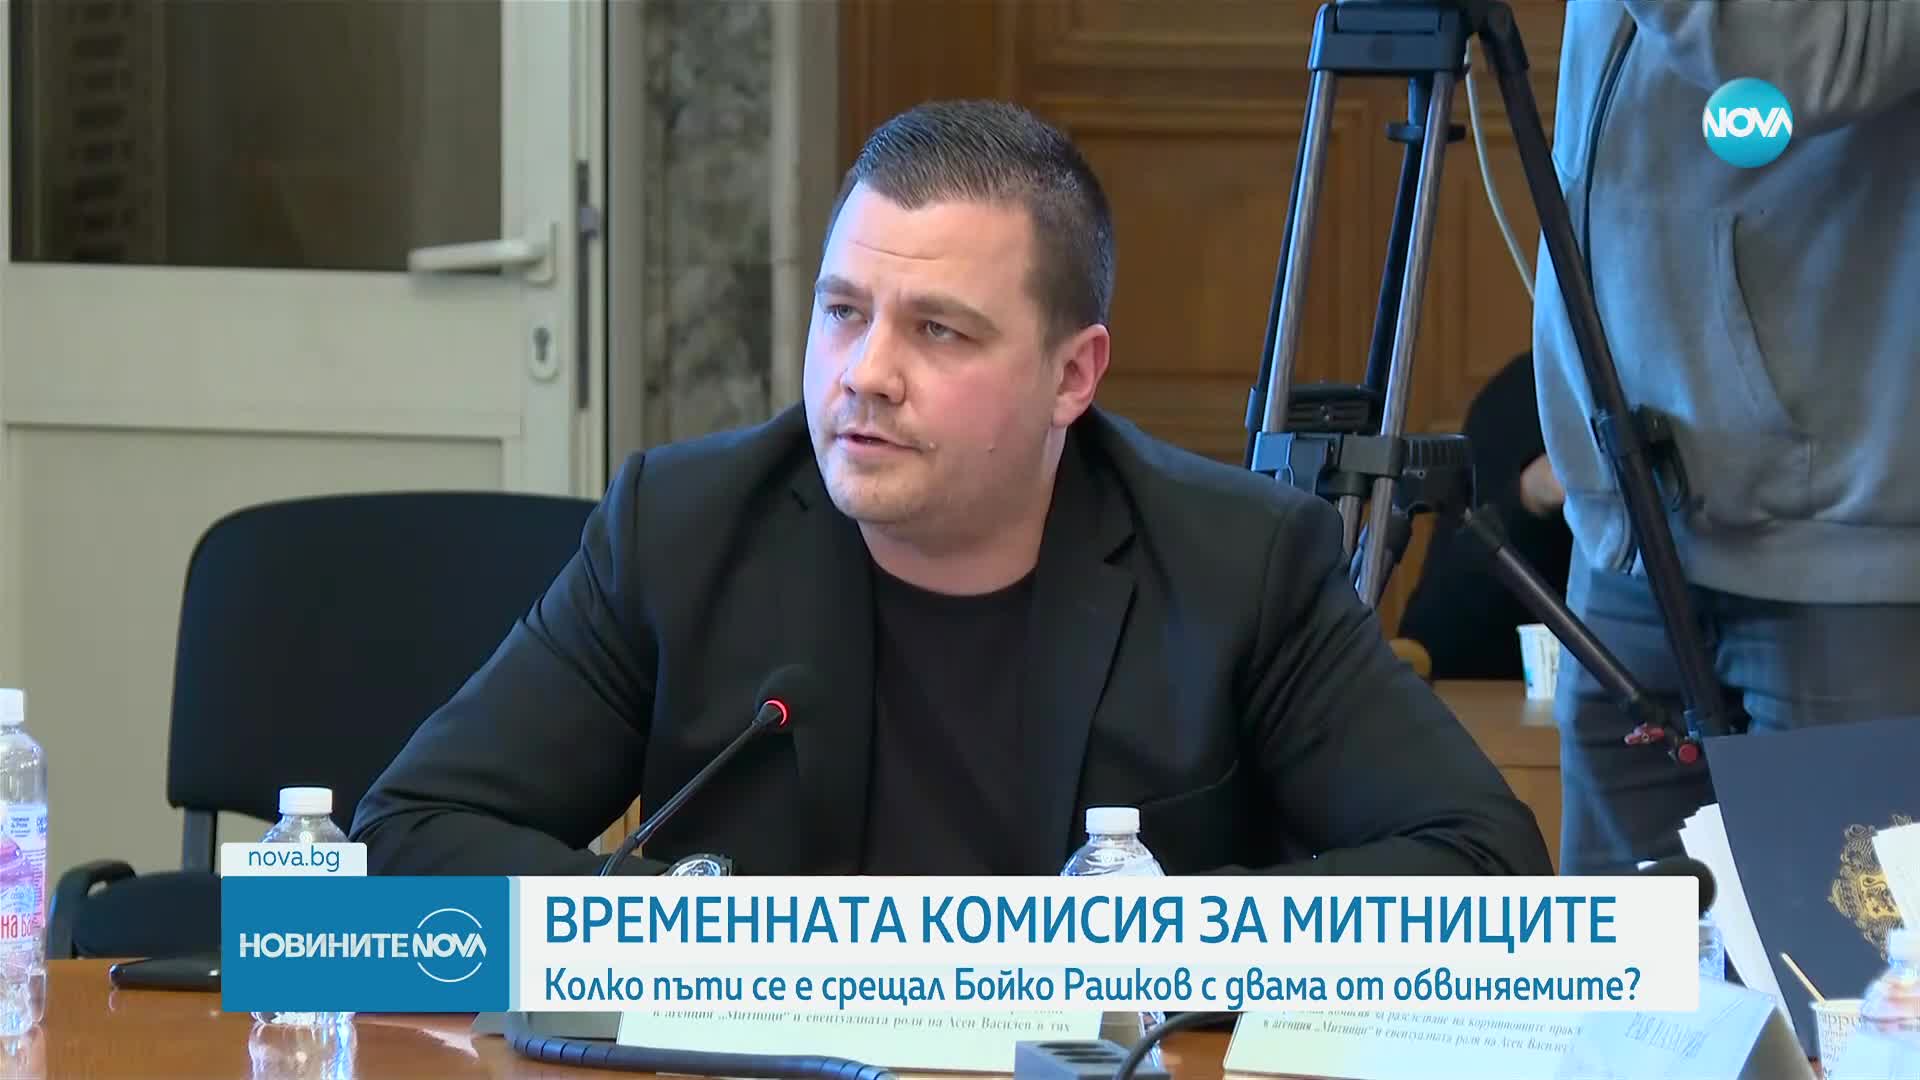 Вътрешното министерство: Стефан и Марин Димитрови са били на срещи в МВР нееднократно